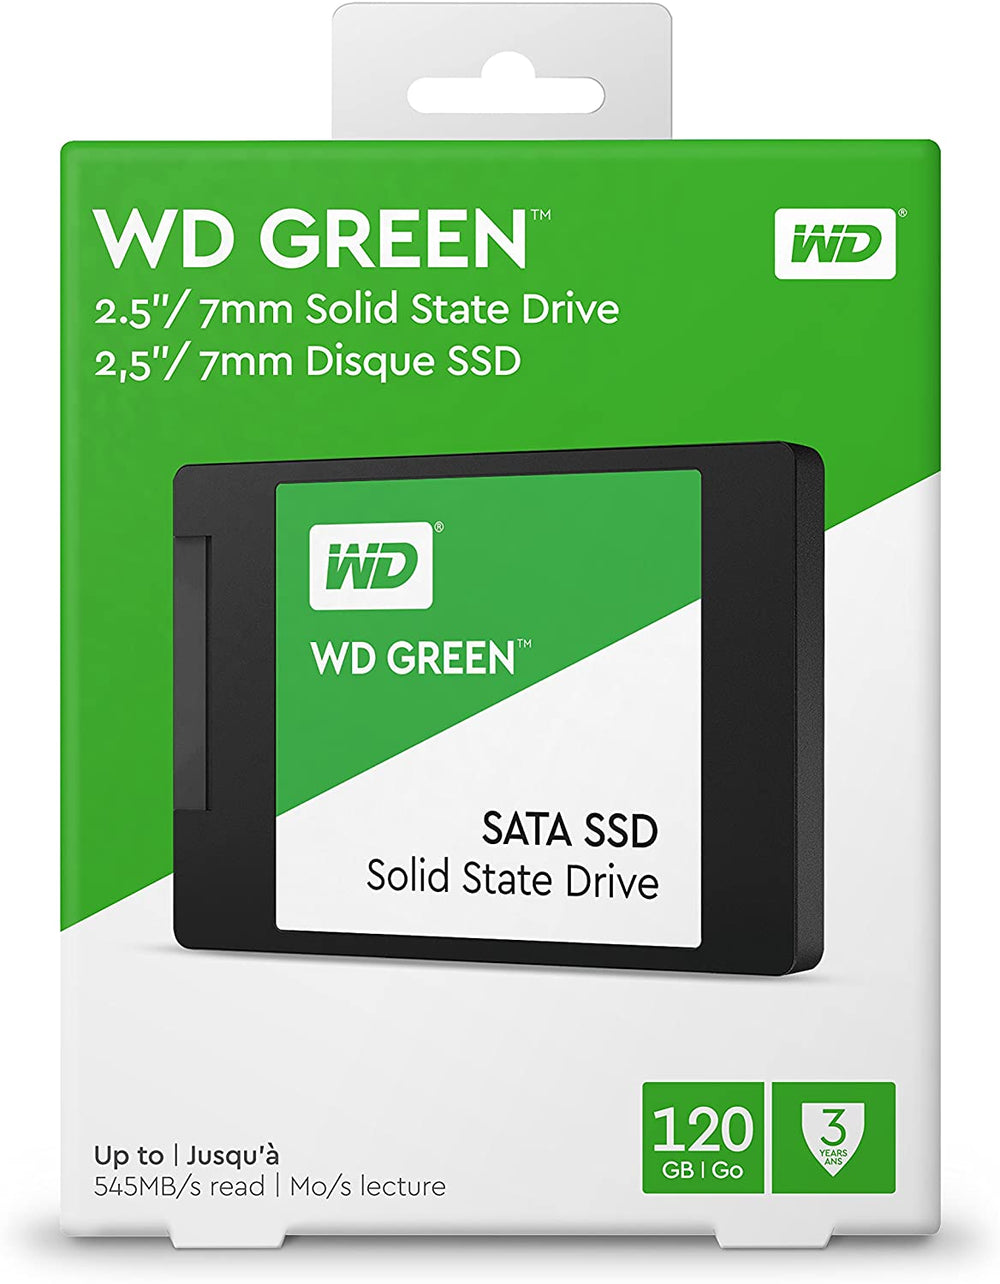 WD Green 120GB Internal PC SSD - SATA III 6 Gb/s, 2.5"/7mm